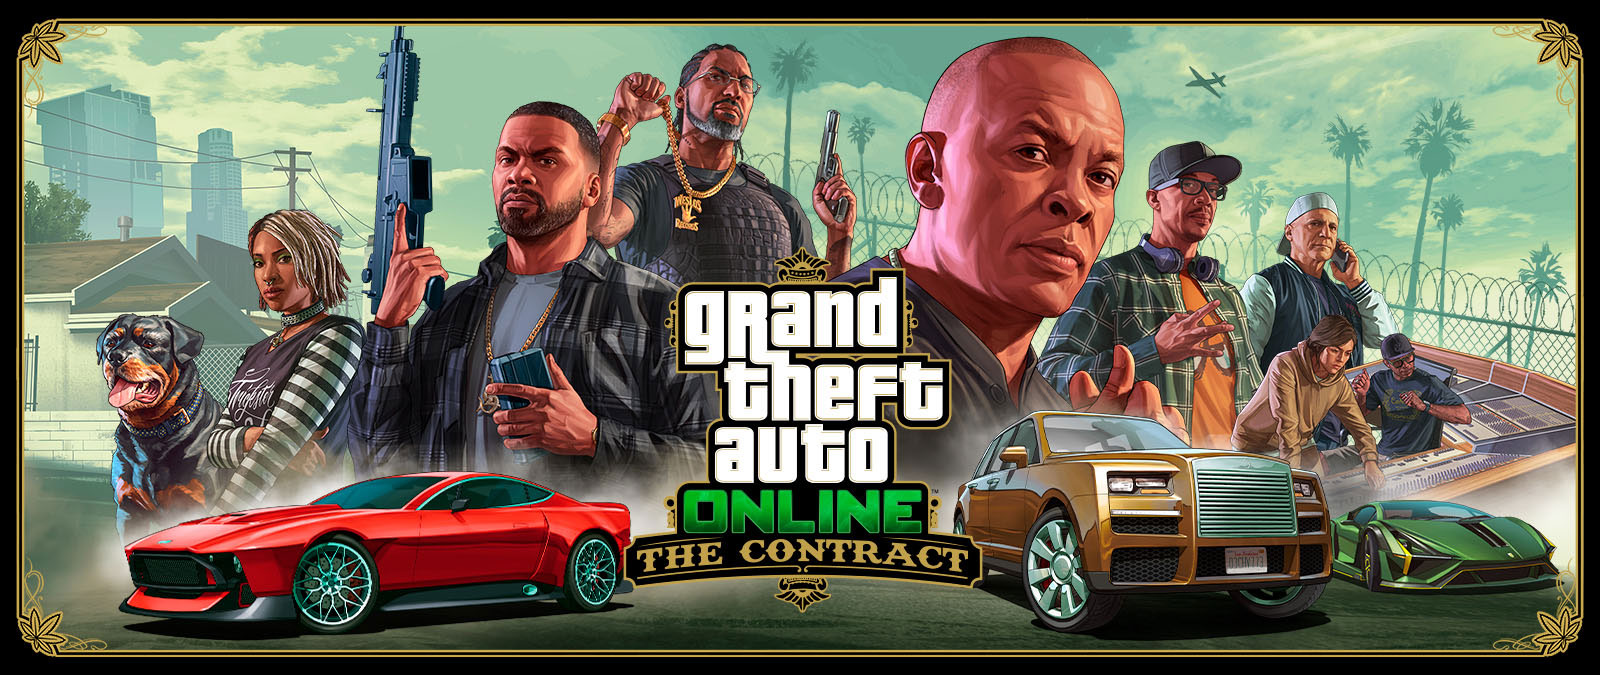 Grand Theft Auto Online, The Contract, Franklin, sieben weitere Freund*innen und Chop, der Hund, sind hinter drei exotischen Autos aufgereiht. 